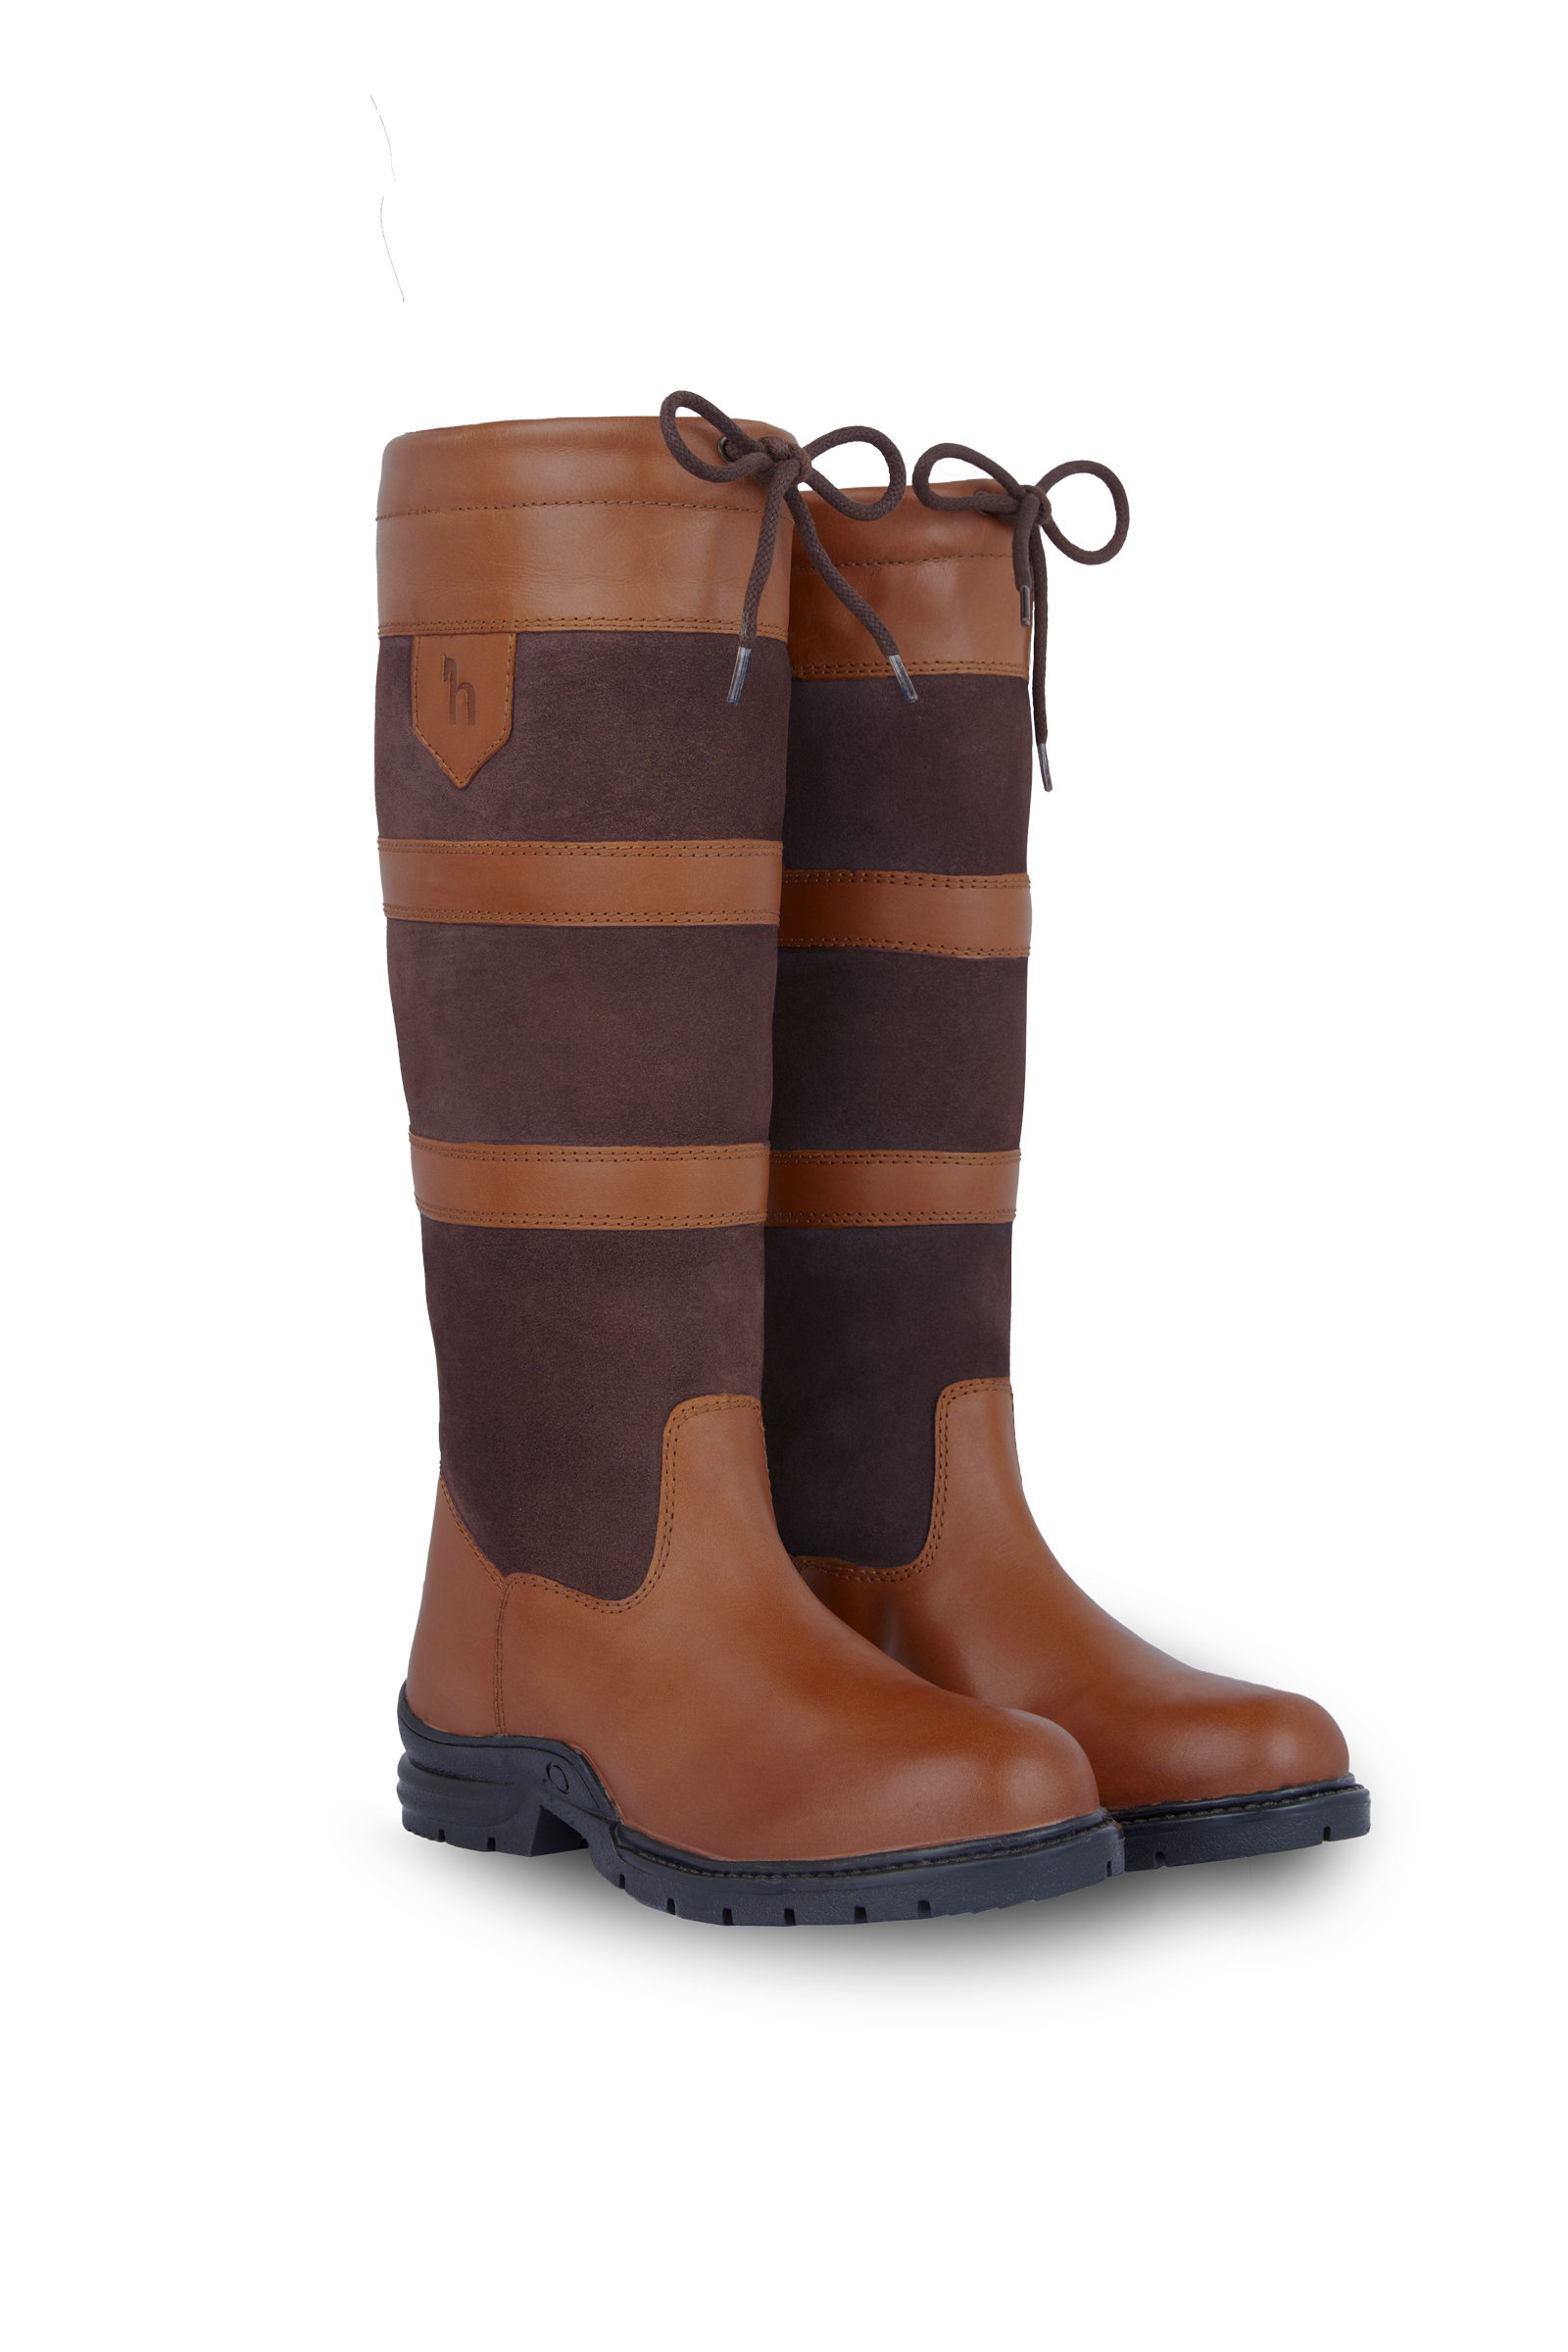 Active Winter Paddock Boots – EquiZone Online